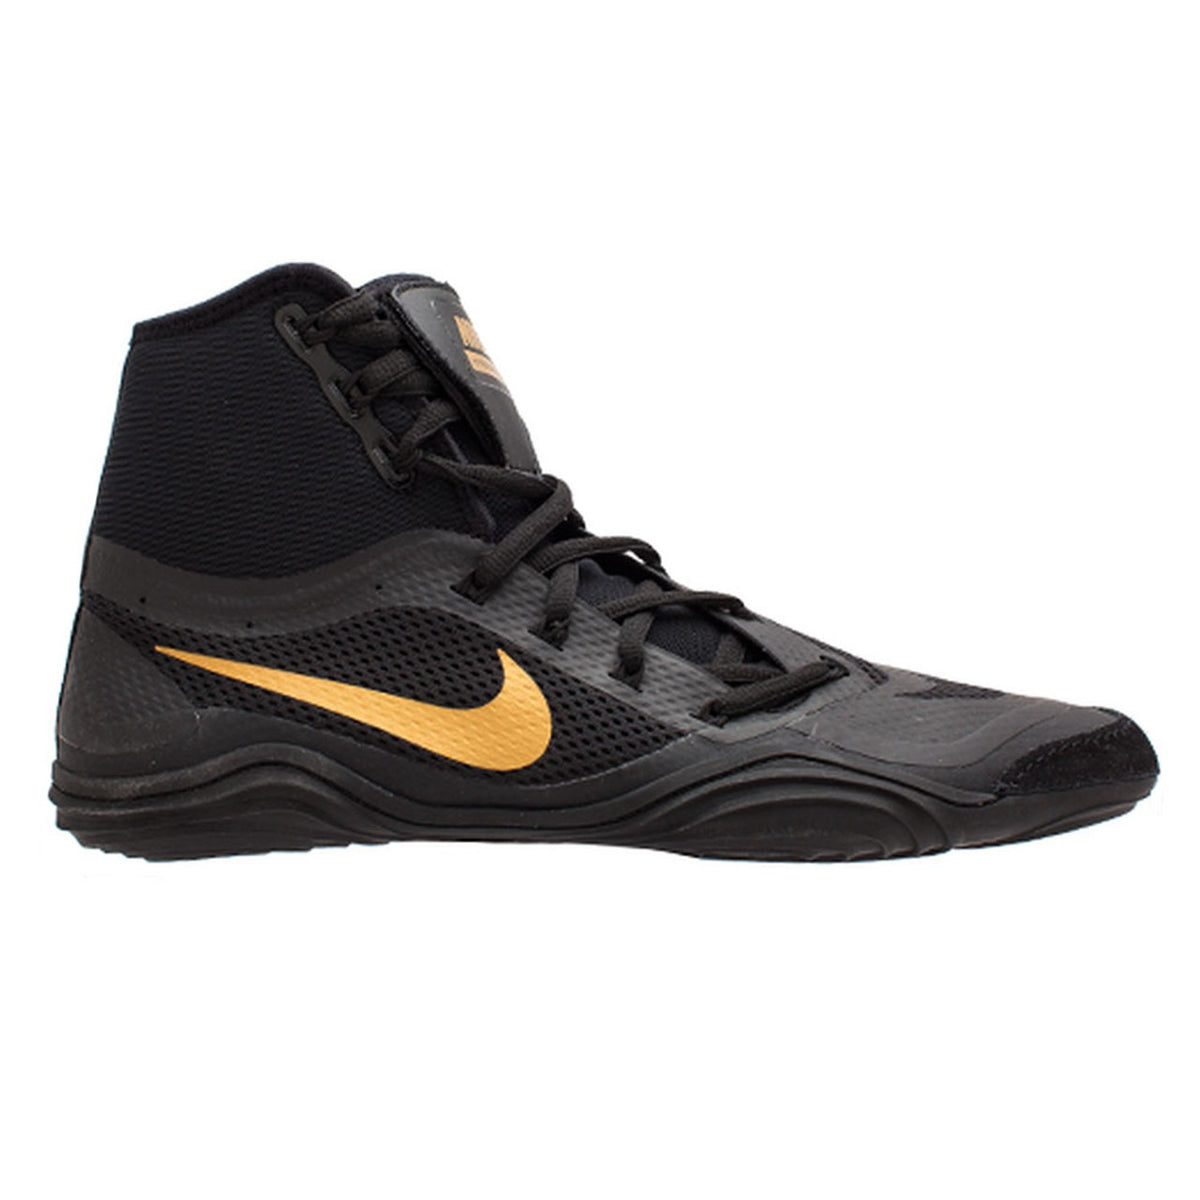 Zapatos de lucha Nike HYPERSWEEP LE. El zapato de lucha profesional para todos los luchadores ambiciosos. Con la tecnología más avanzada, Nike Hypersweep te brinda mucho agarre en la alfombra de lucha. En entrenamiento y competición. Aquí en color negro/oro.